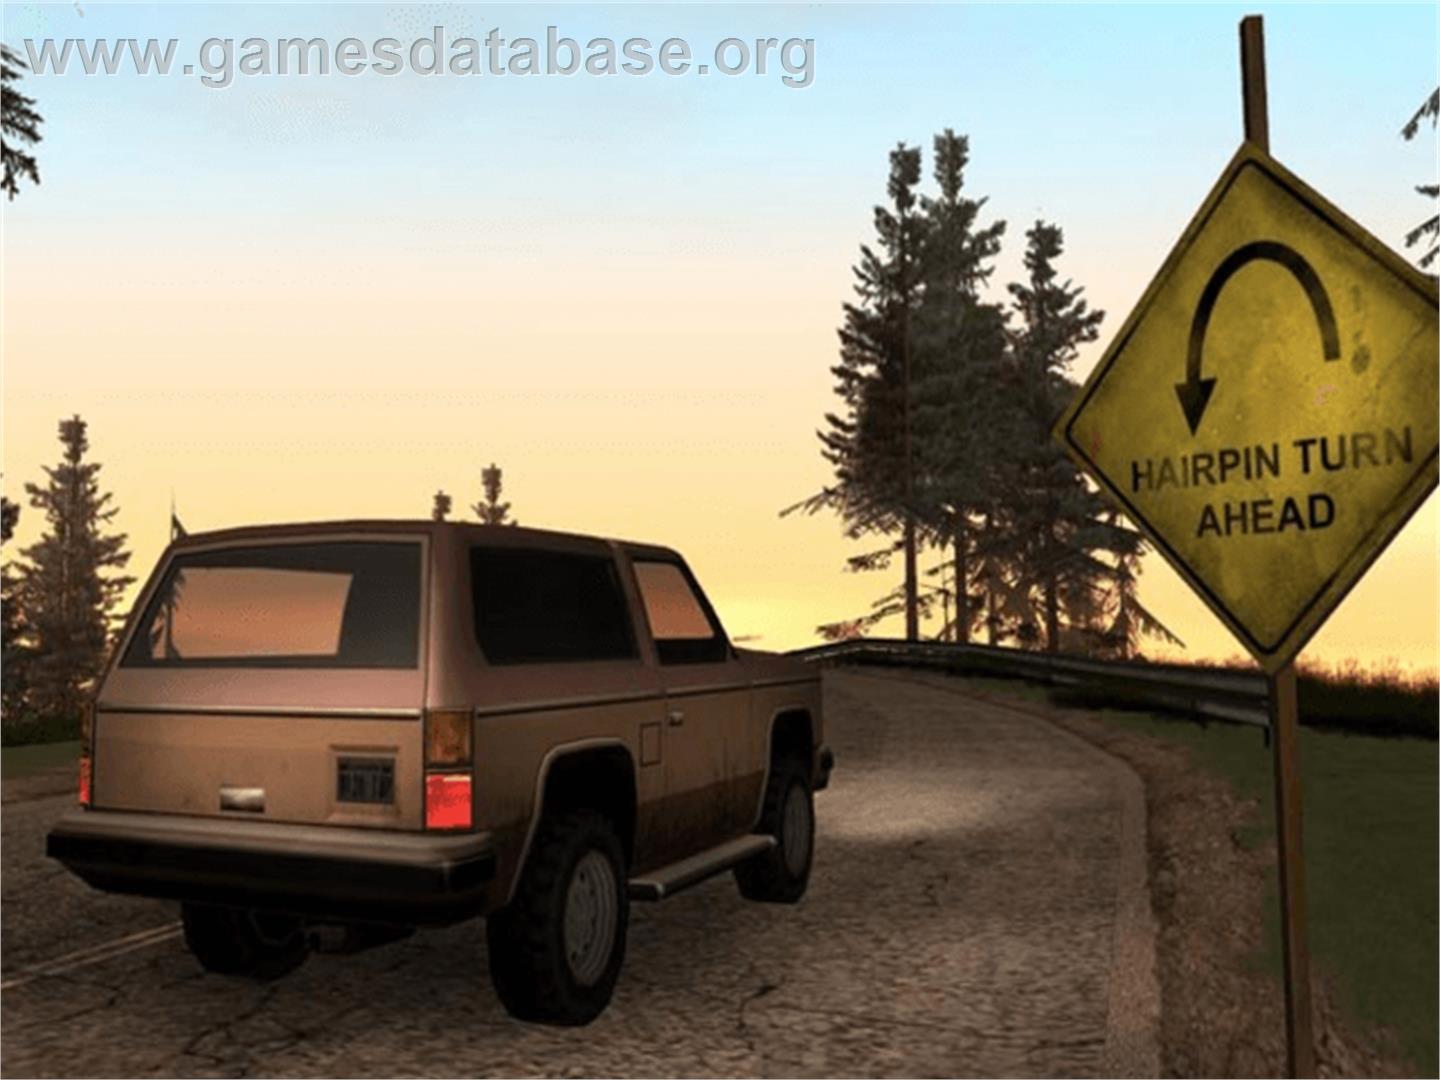 Grand Theft Auto: San Andreas - Microsoft Xbox - Artwork - In Game